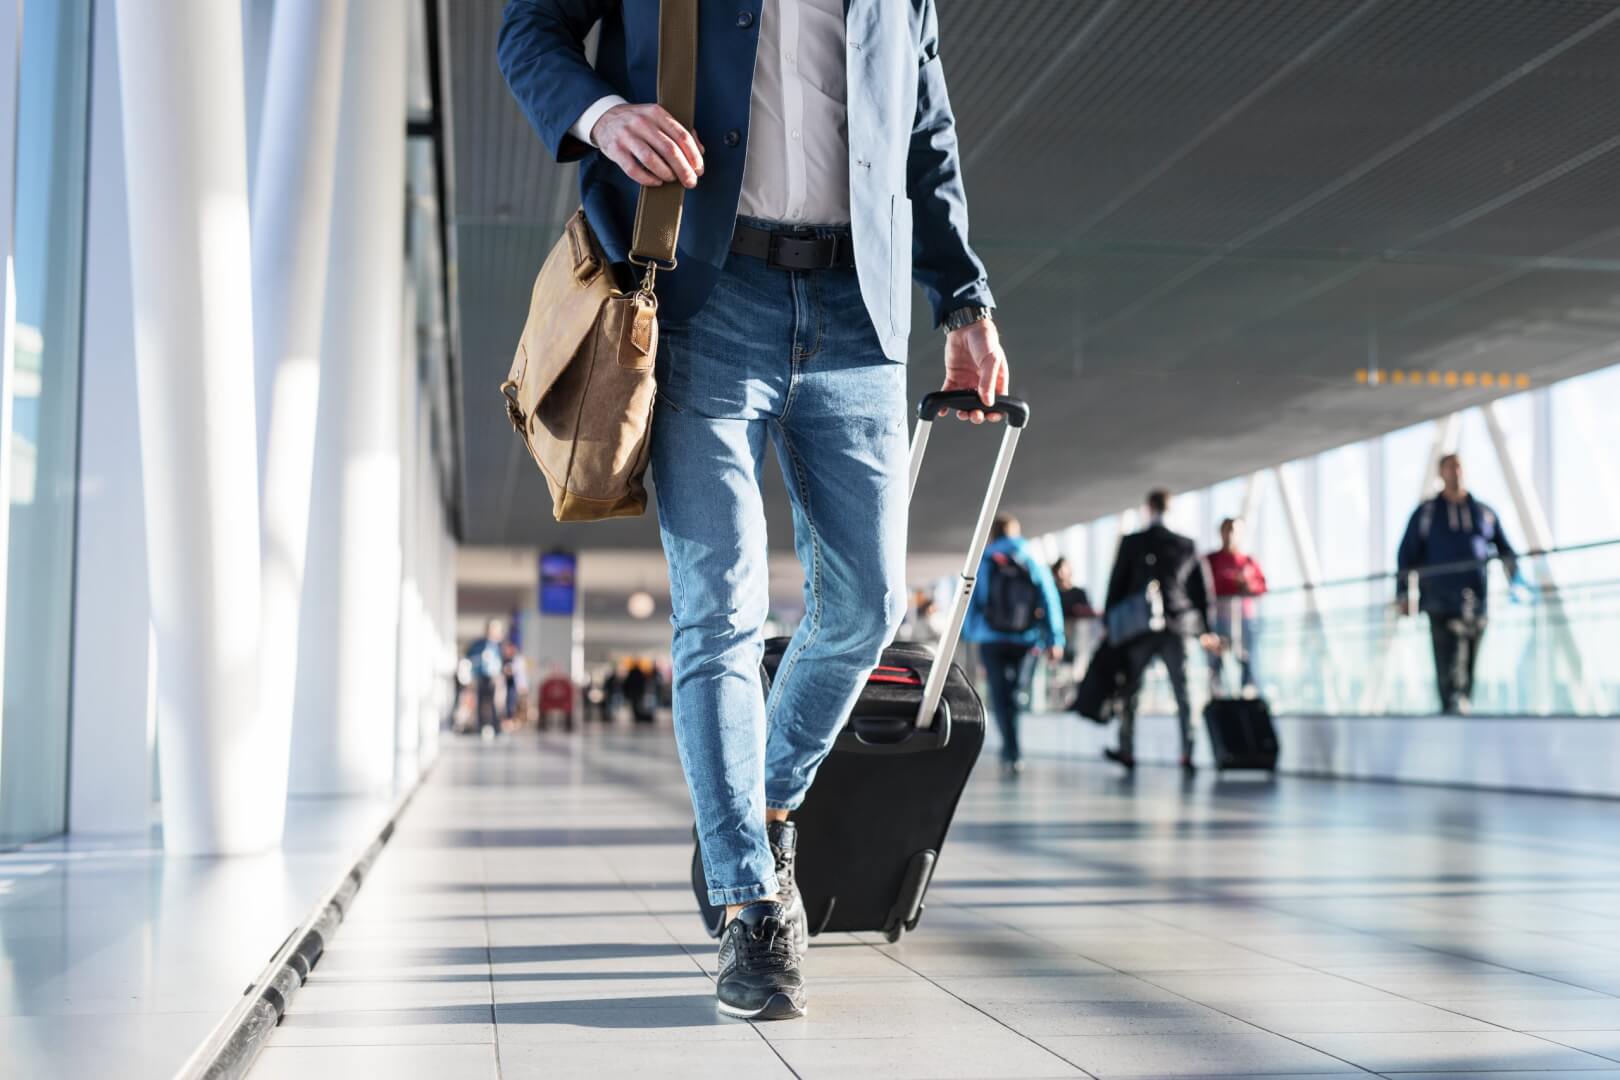 Homem caminha carregando uma mala no hall do aeroporto. Imagem disponível em Shutterstock.